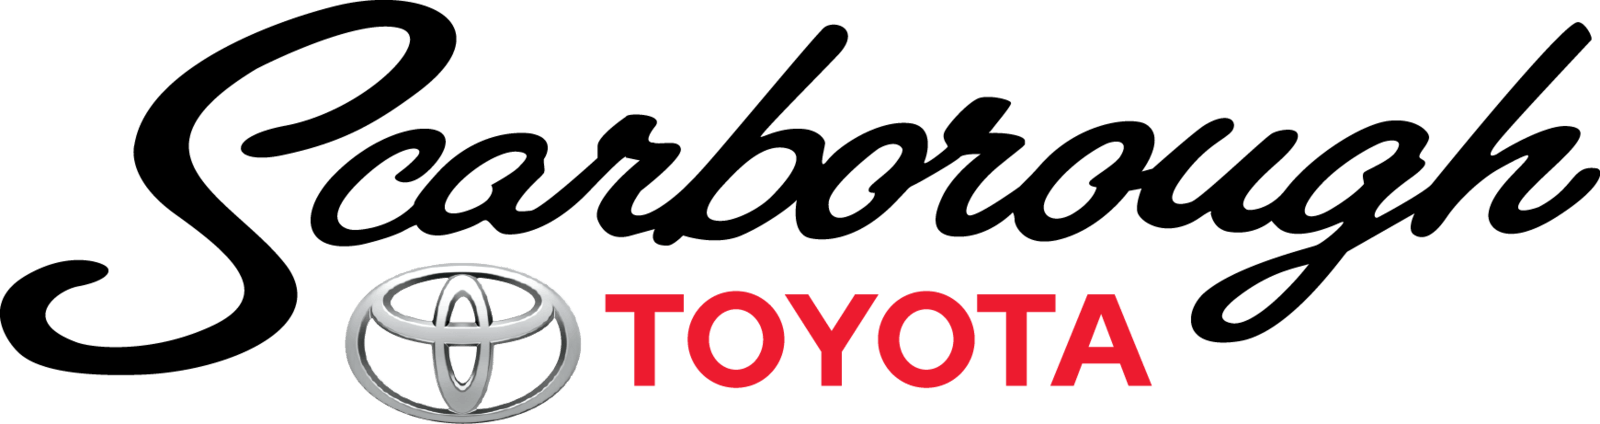 Scarborough Logo - Because We Care: Scarborough Toyota Raises $000